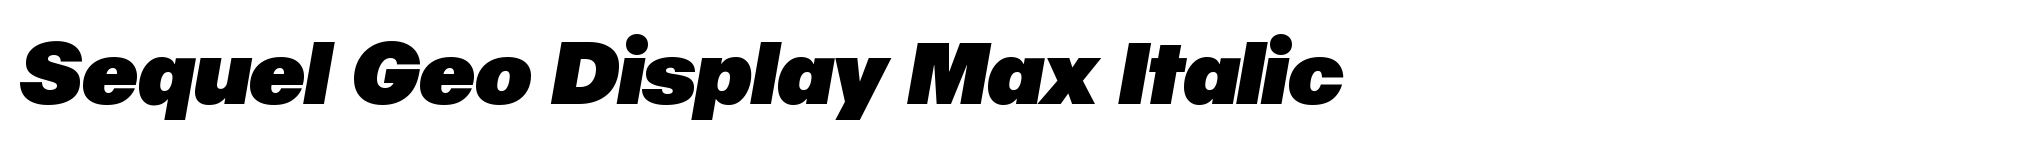 Sequel Geo Display Max Italic image